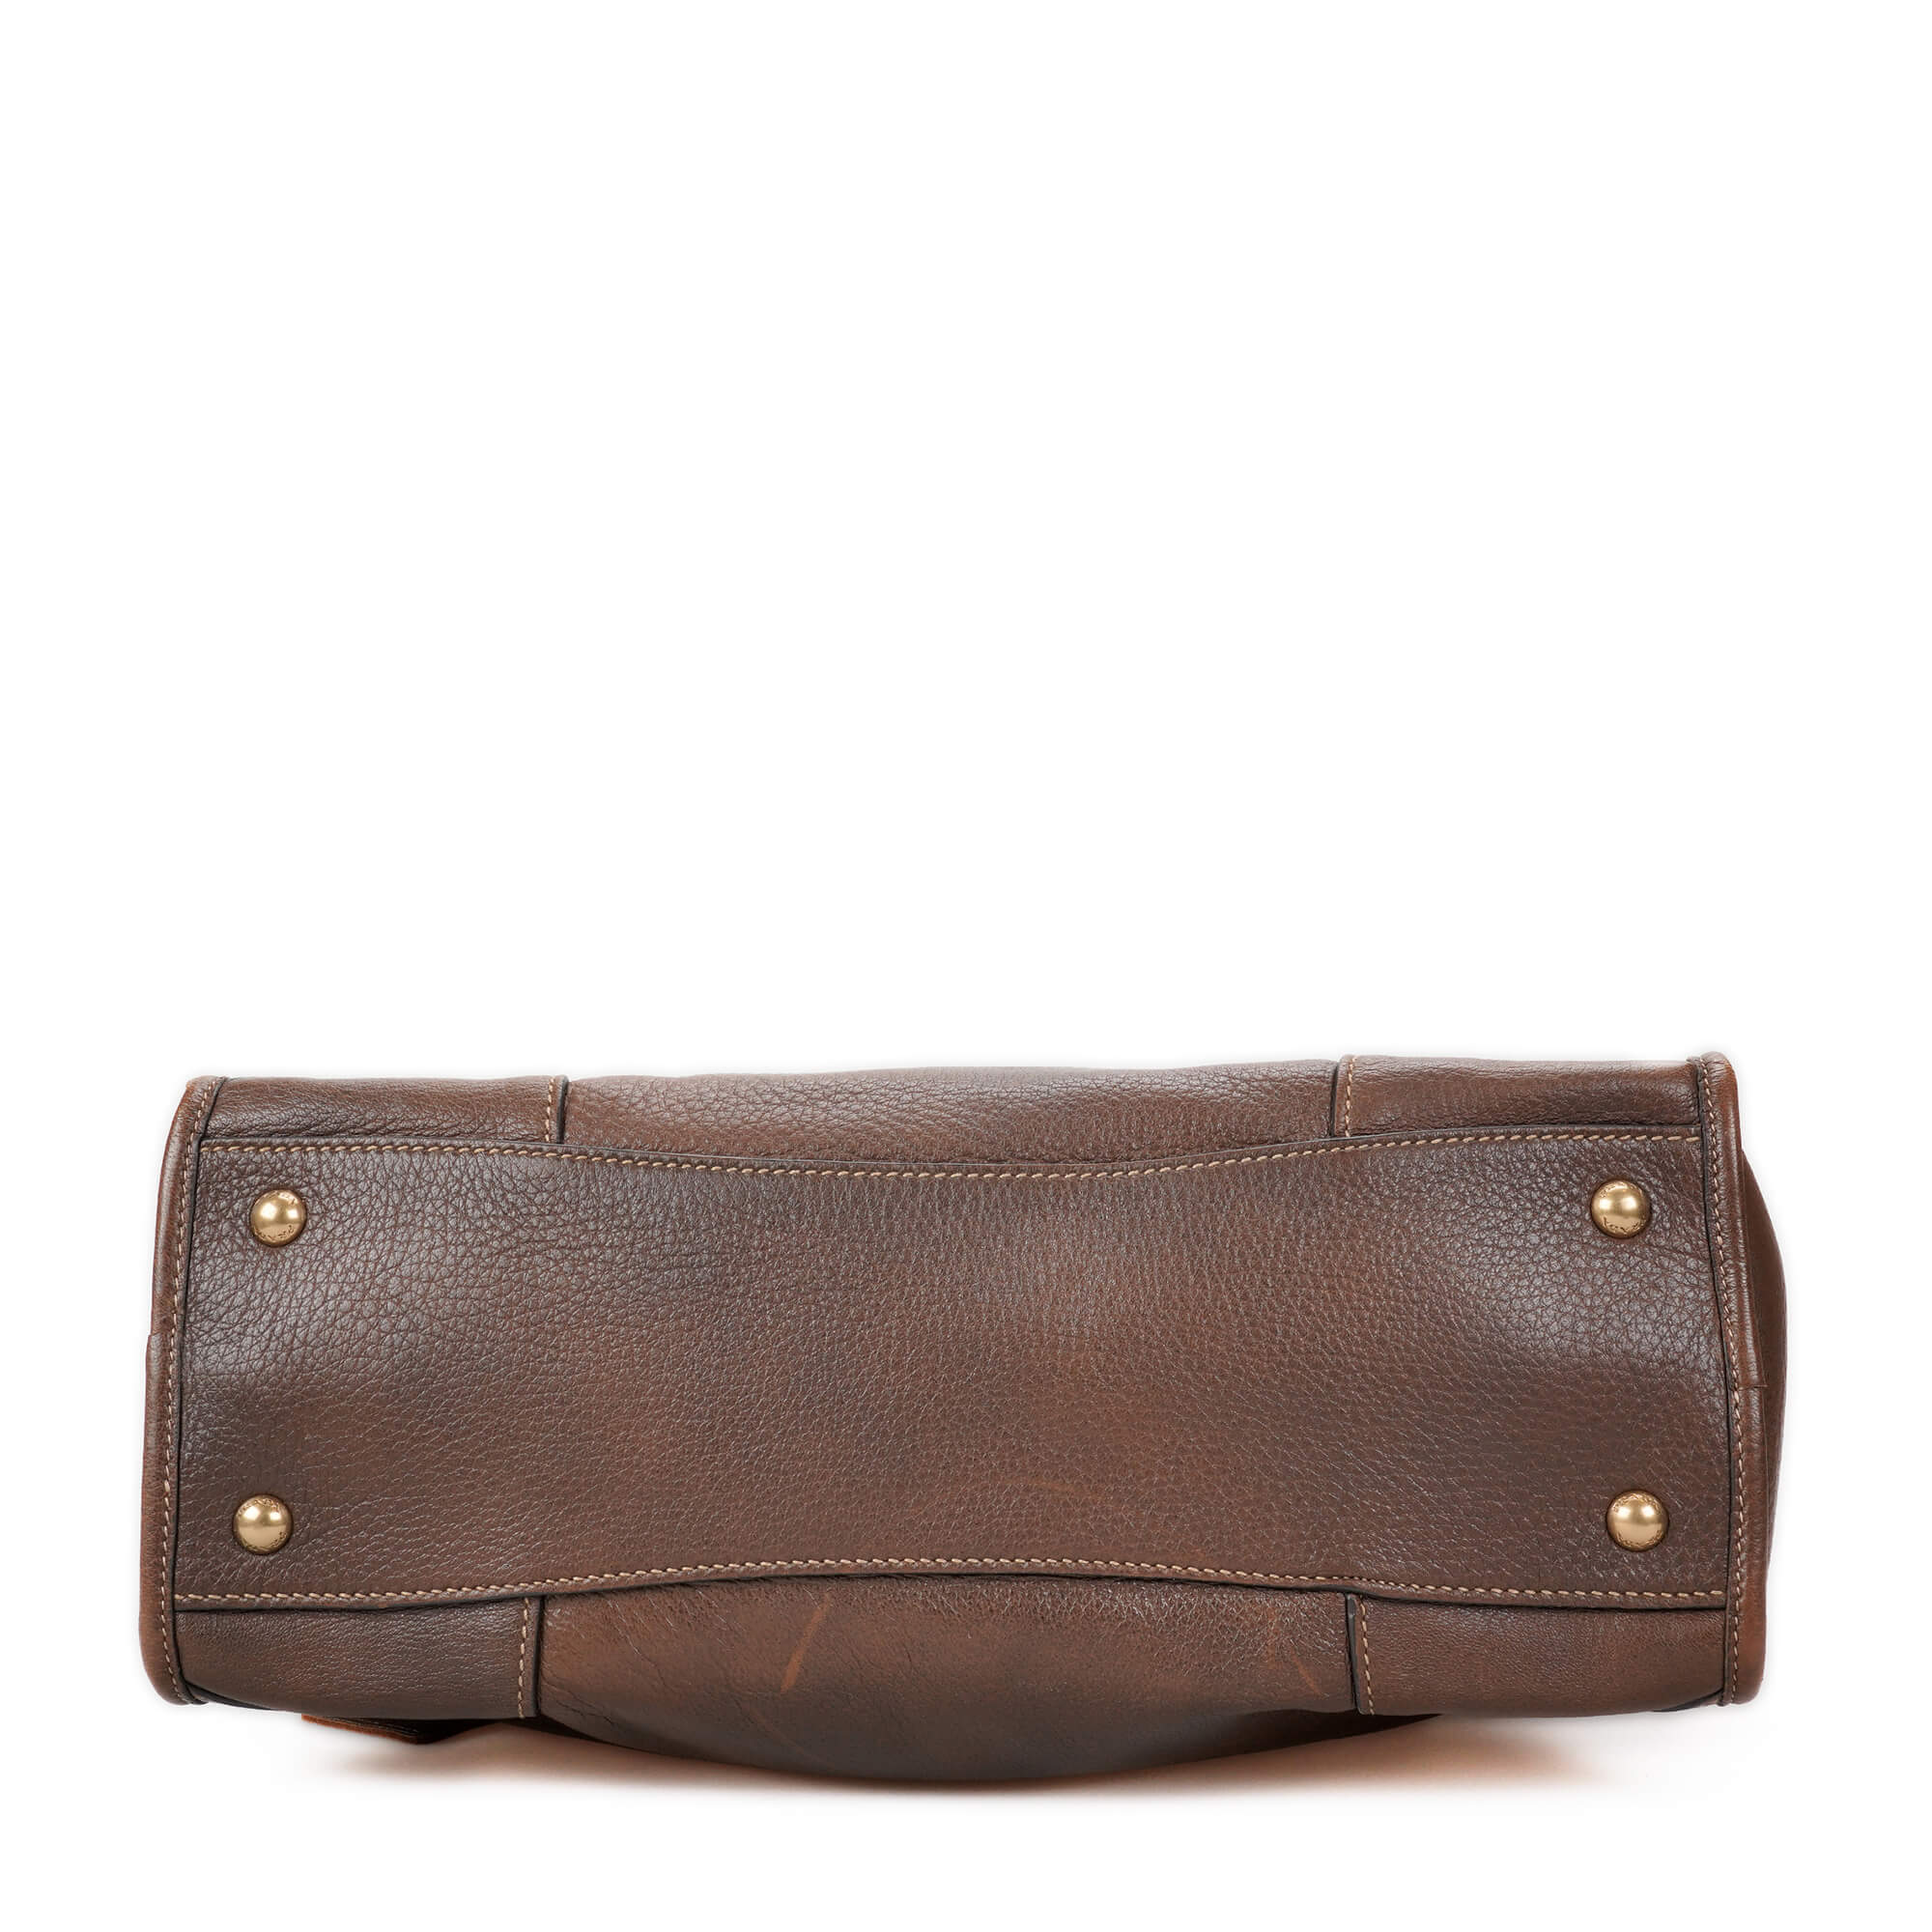 Prada - Brown Leather Vitello Doino Bouletto Bag